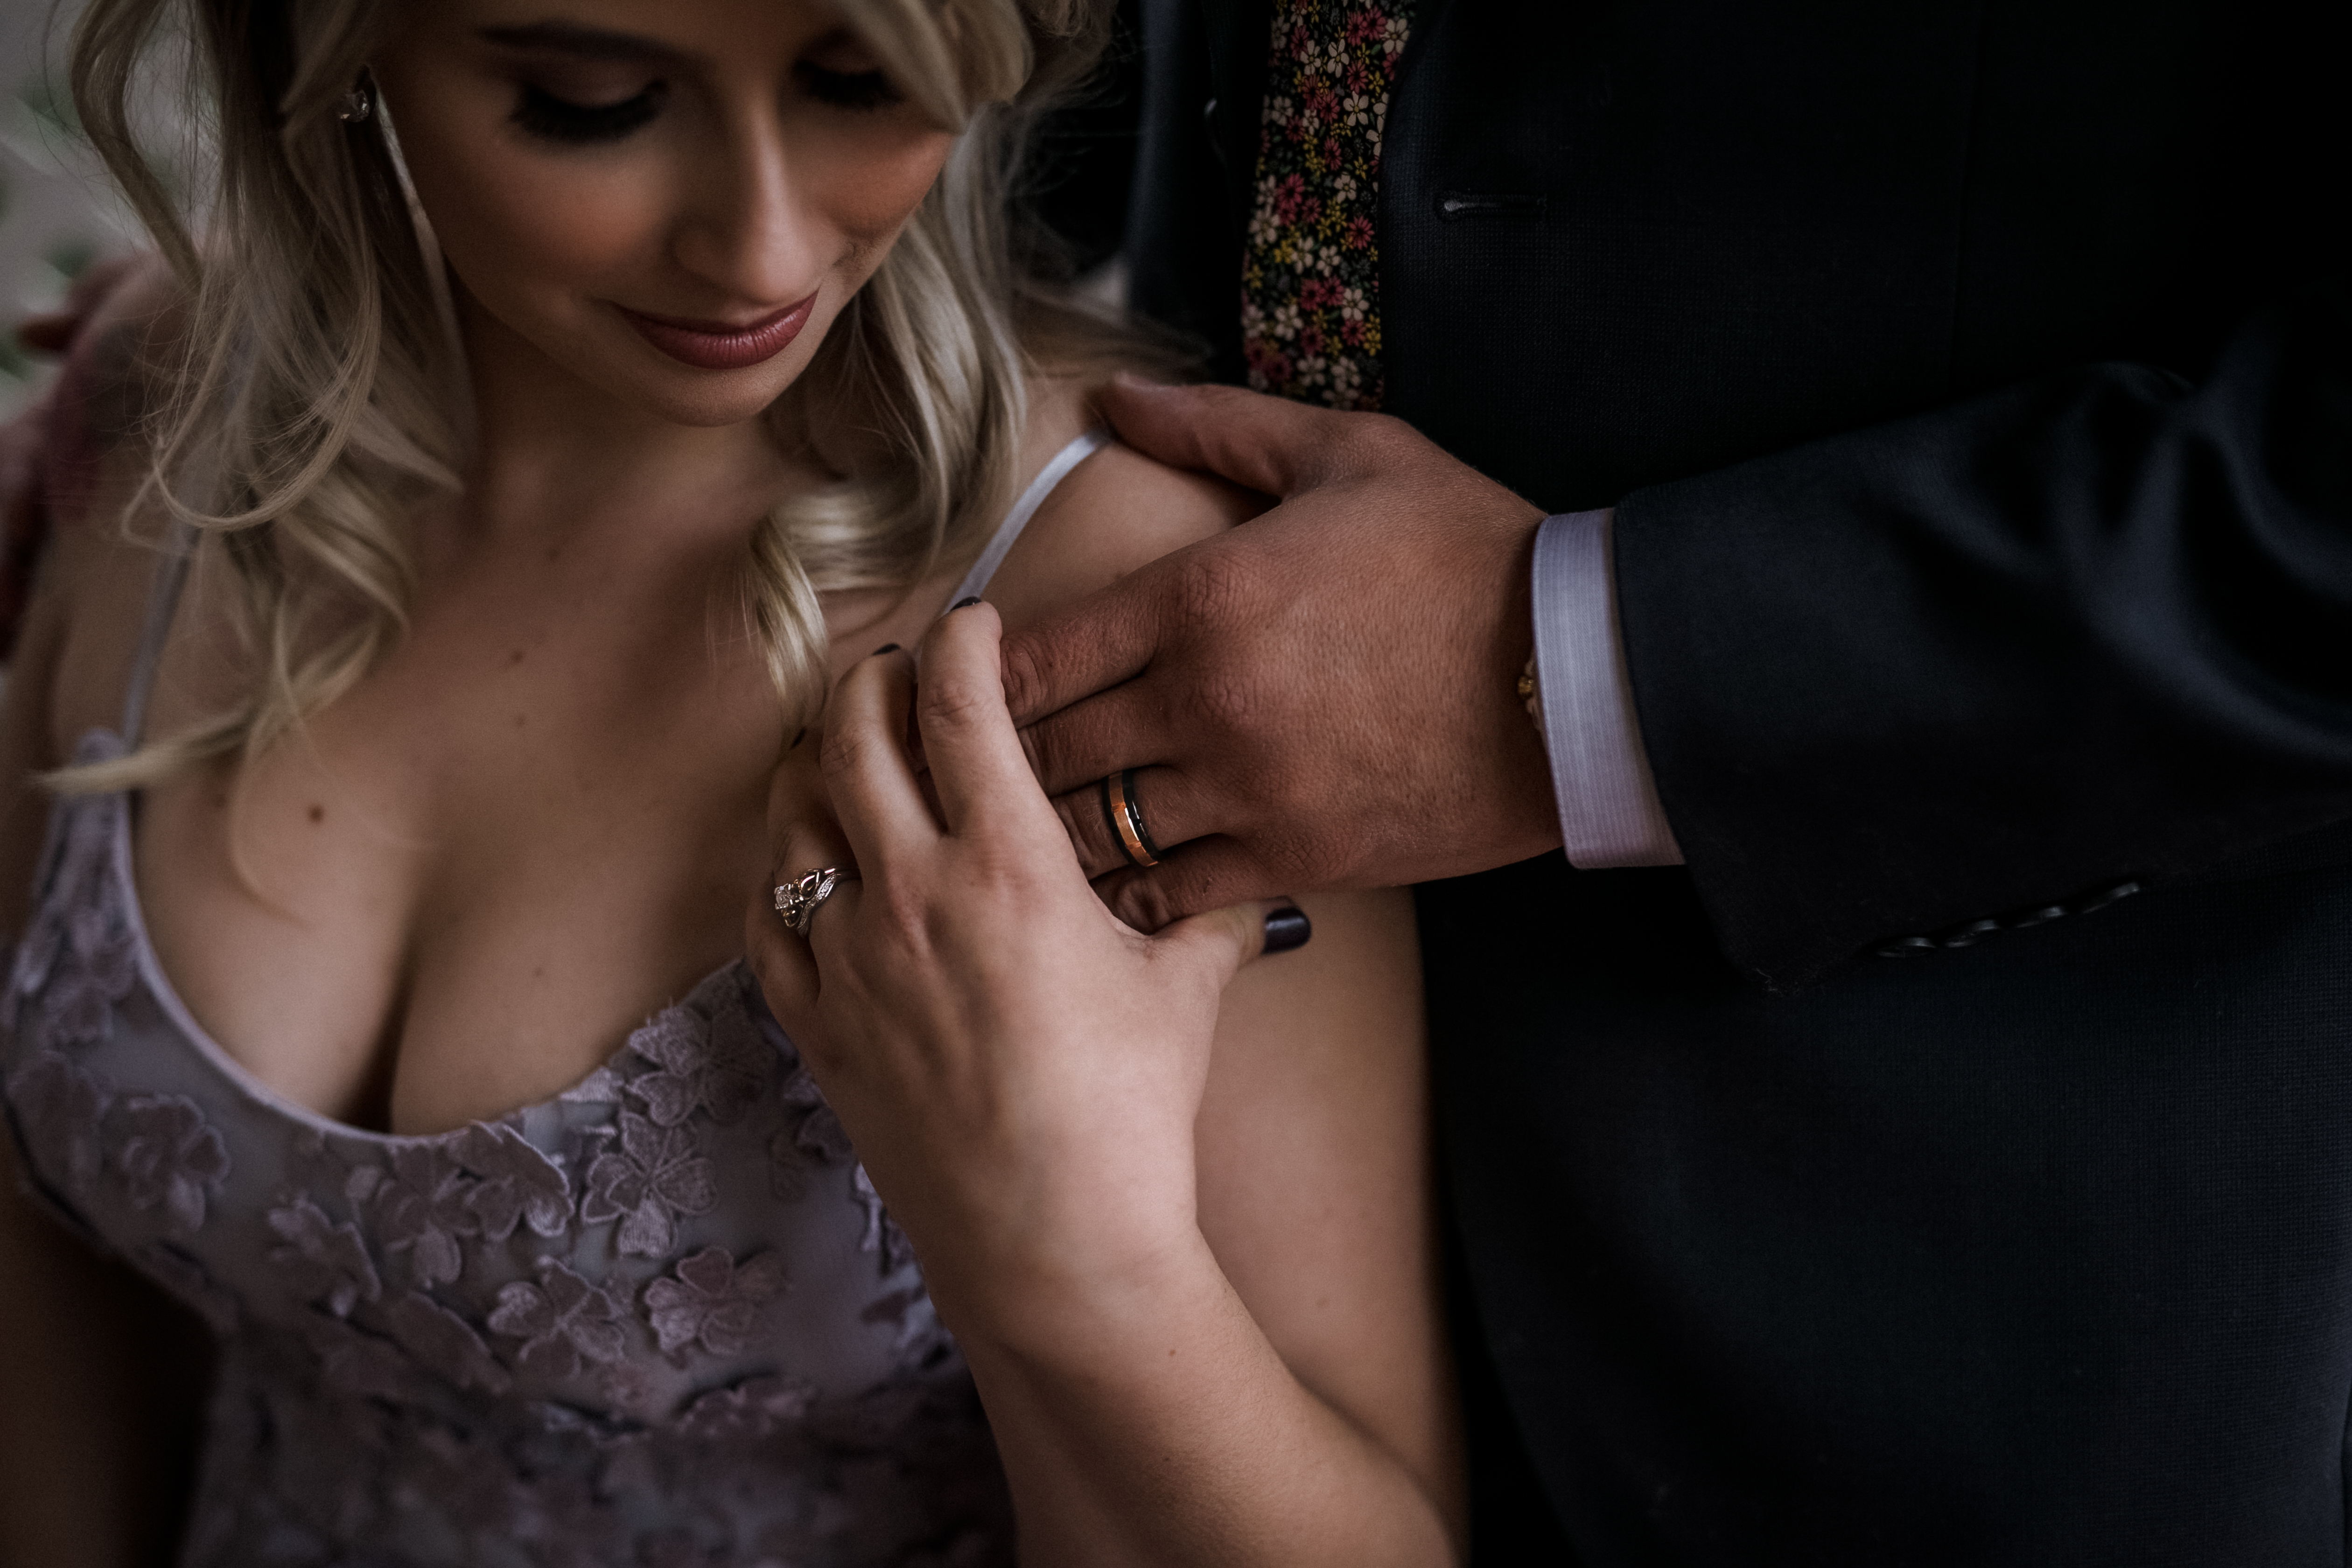 bride and groom wedding rings